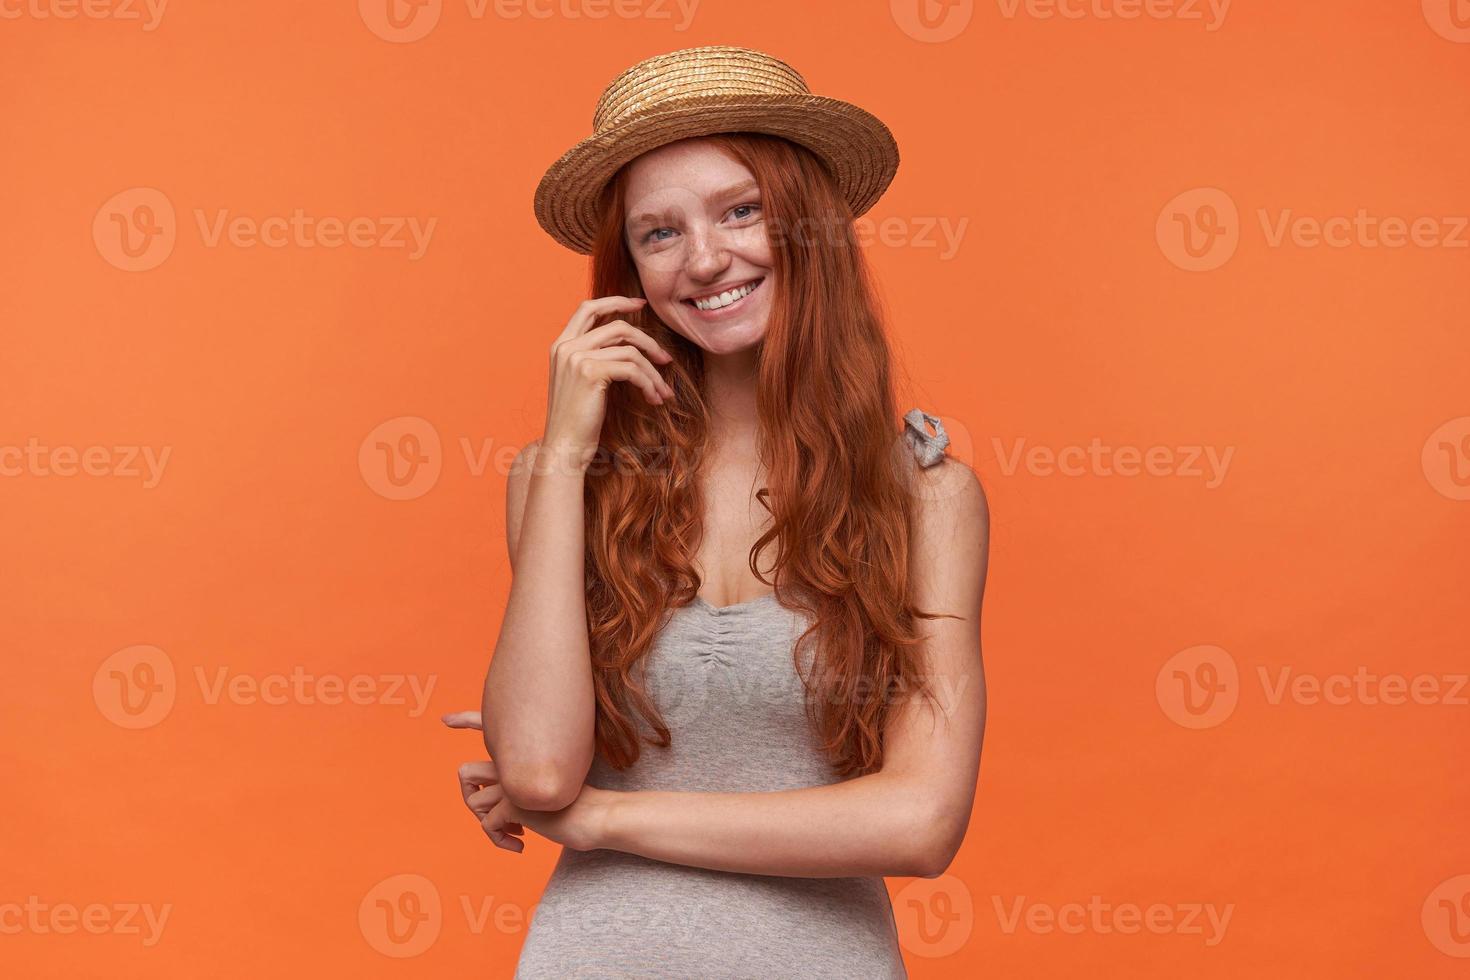 foto de estudio de una joven y bonita mujer de pelo rojo con ropa informal y sombrero de navegante, parada sobre un fondo naranja, mirando a la cámara con una sonrisa encantadora y tocando su cabello ondulado